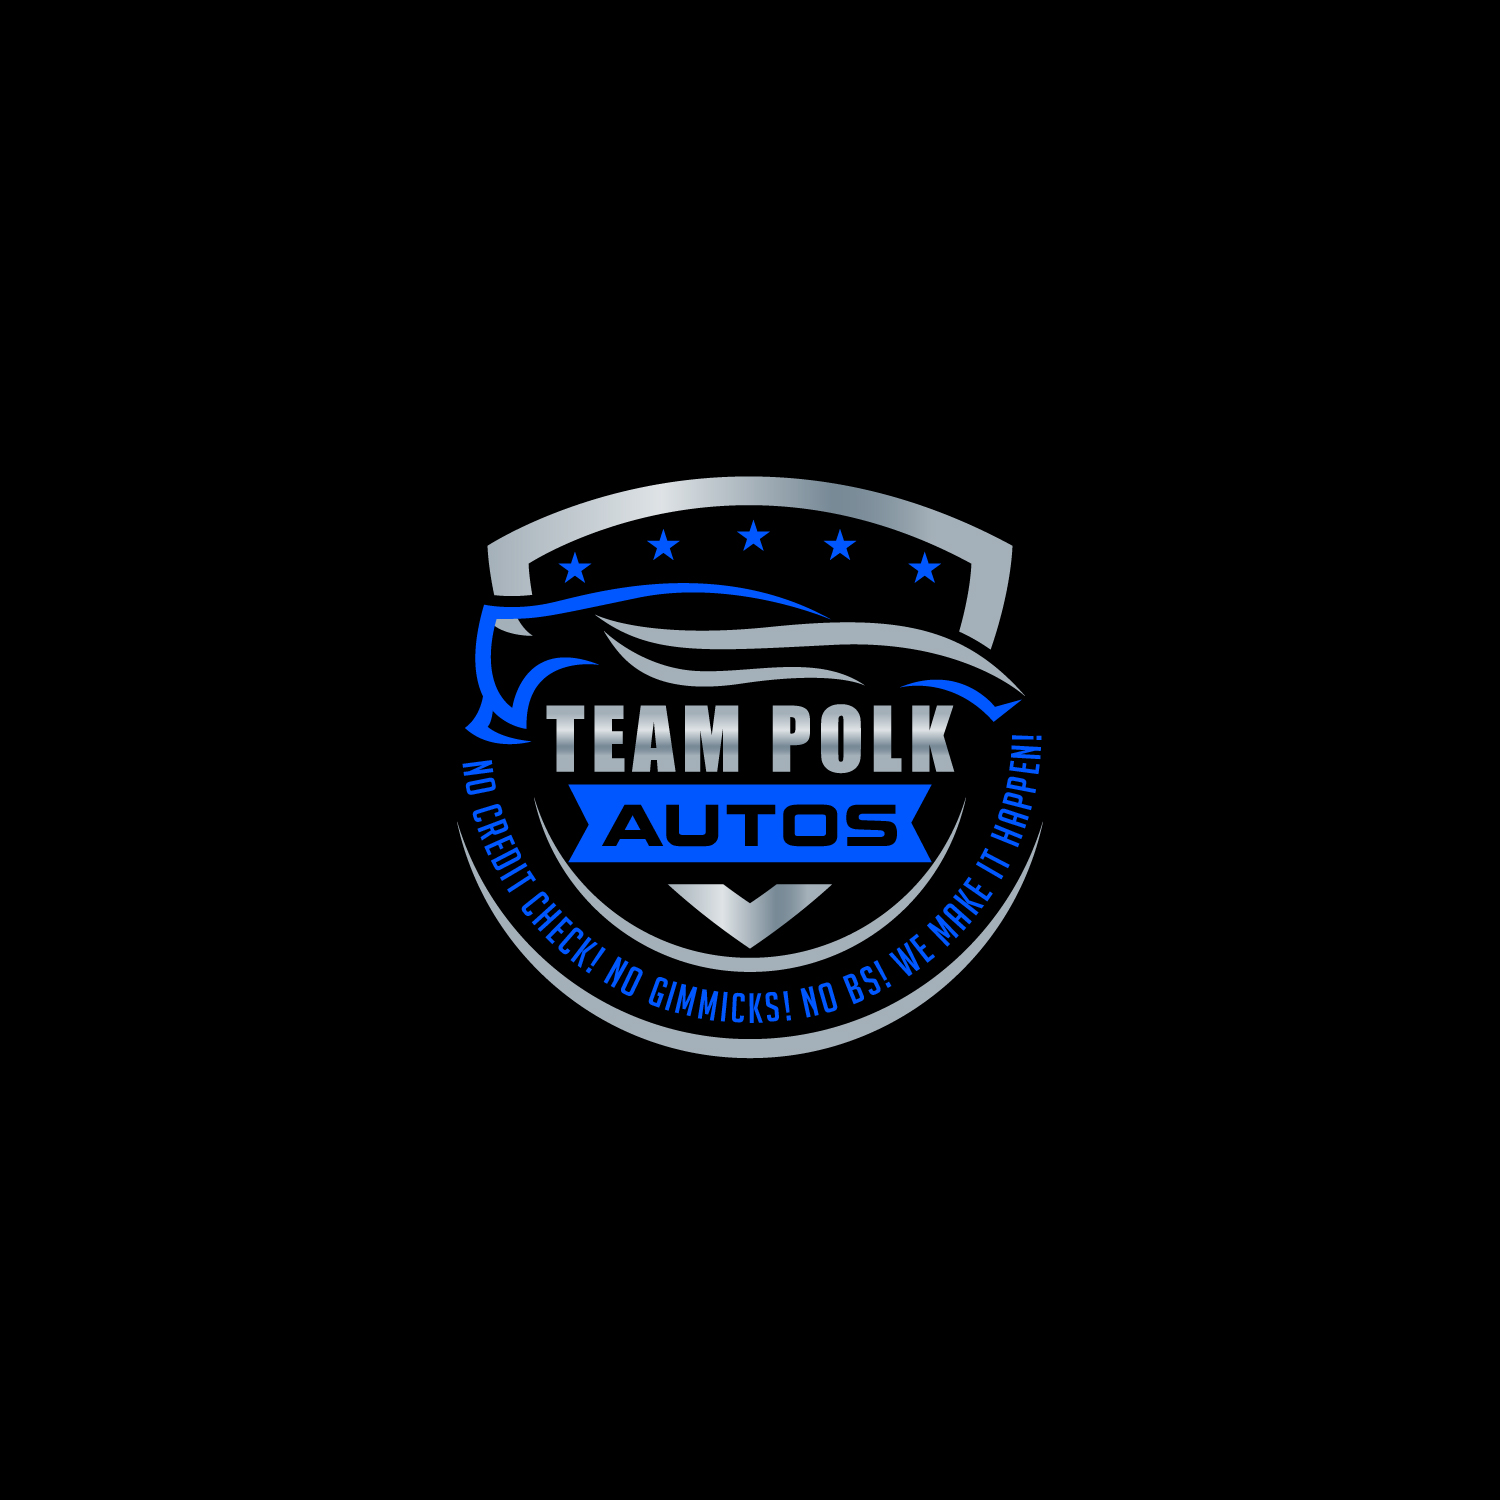 Team Polk Autos